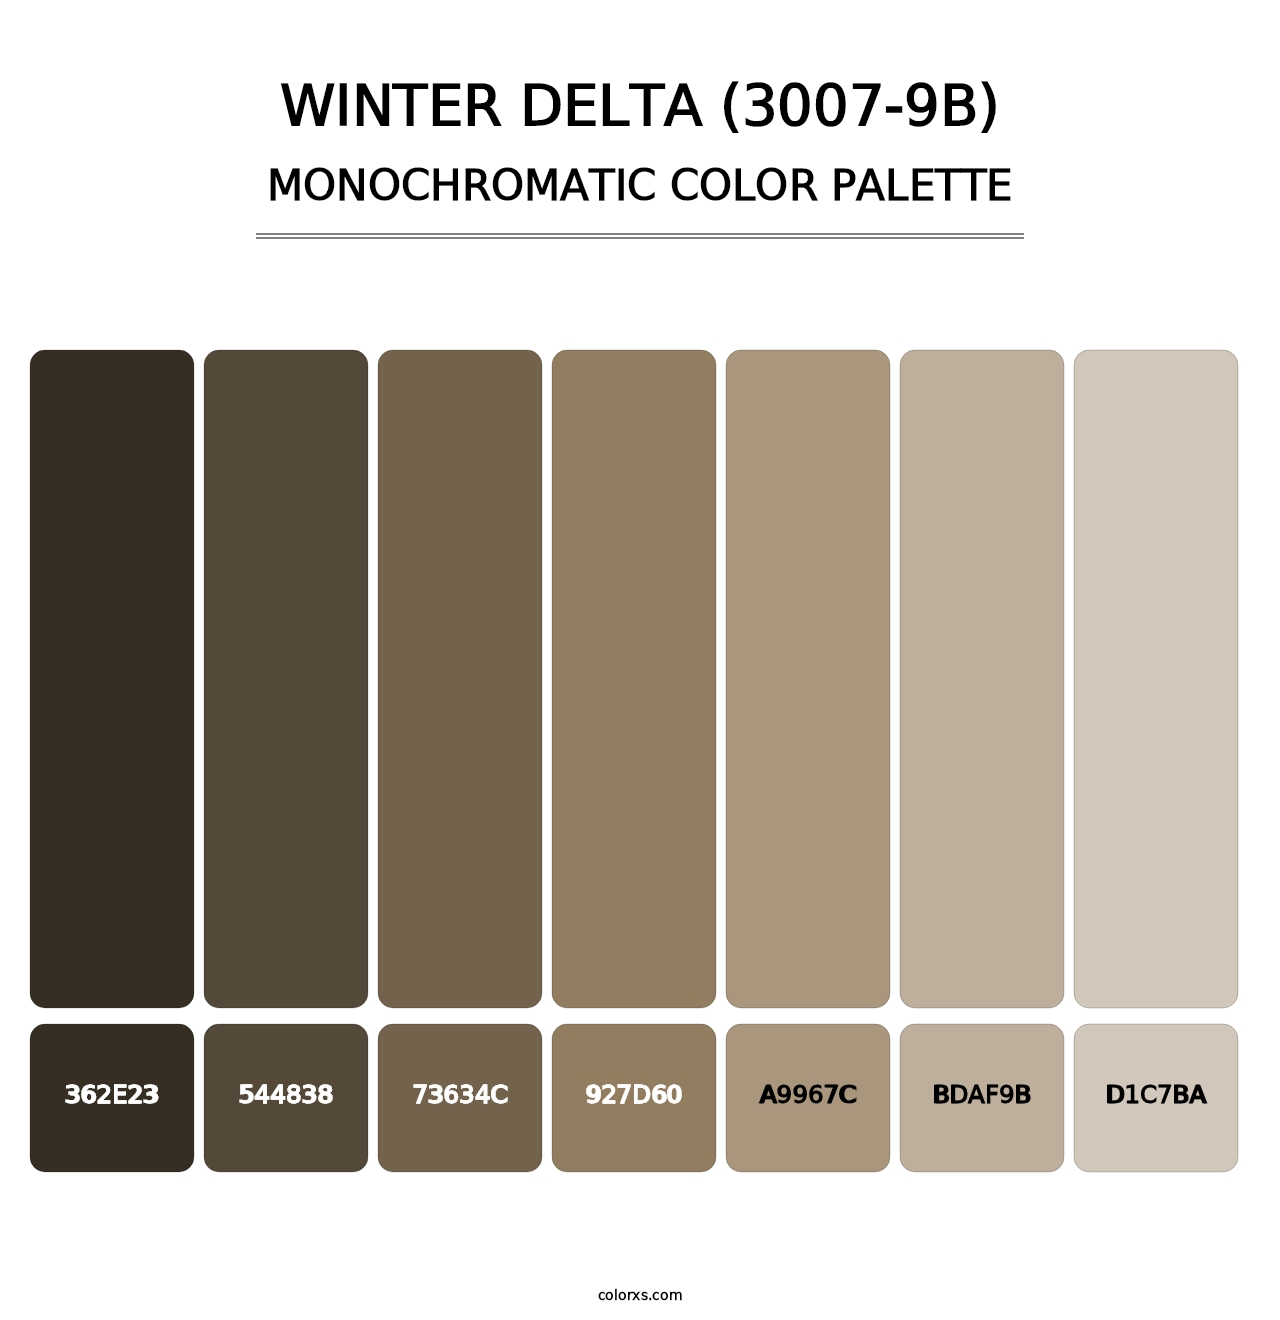 Winter Delta (3007-9B) - Monochromatic Color Palette